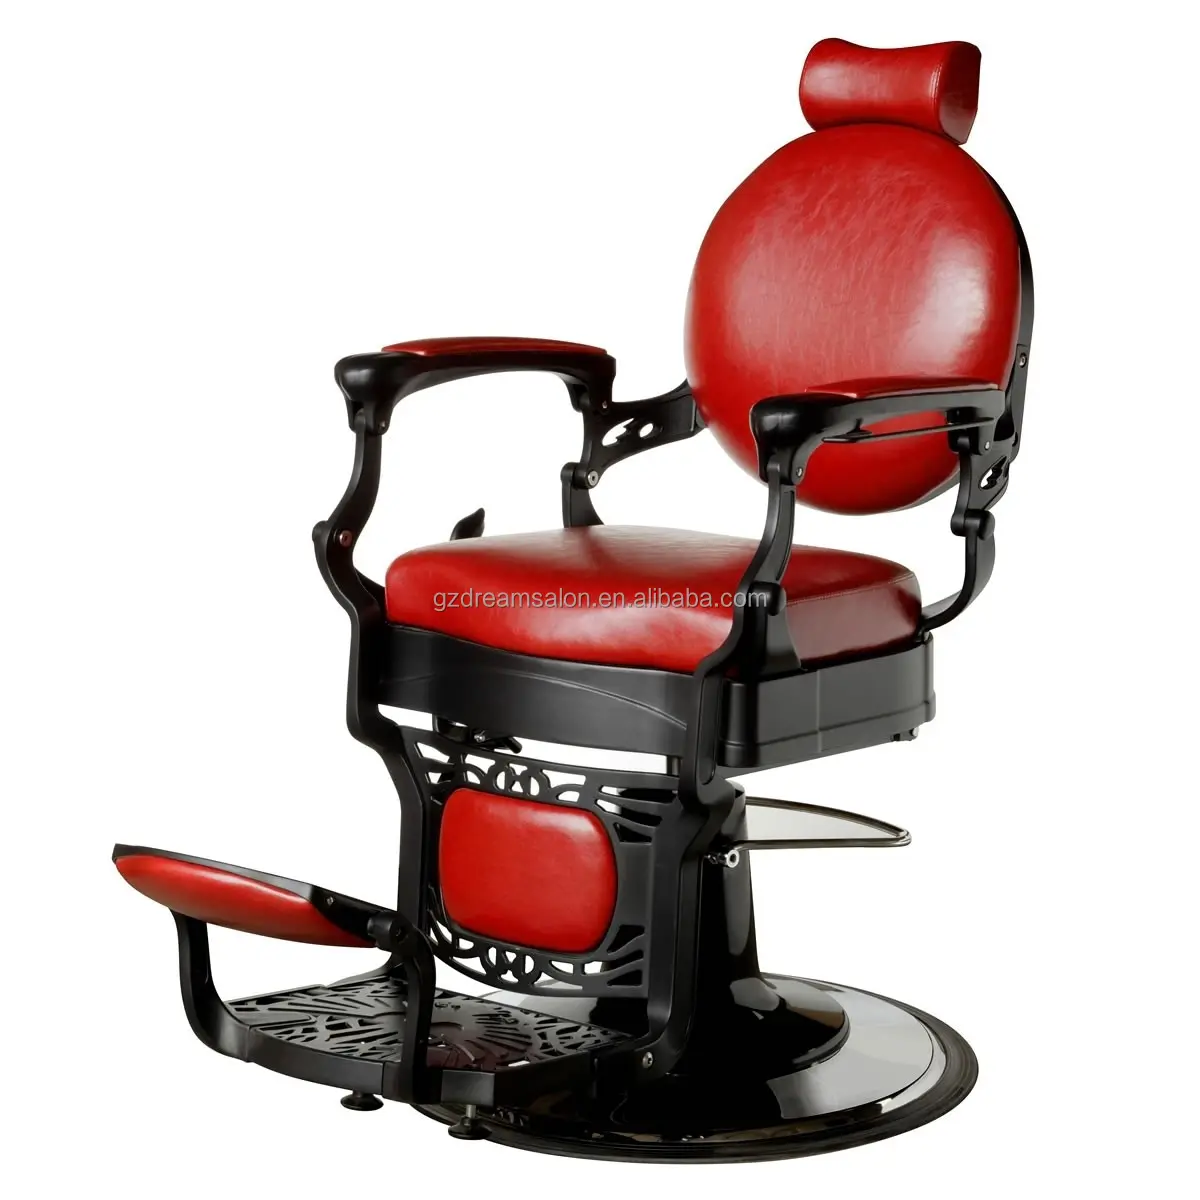 DREAMSALON prezzo di fabbrica sedie da barbiere mobili da salone sedie da parrucchiere commerciali per barbiere Belmont design Barber Chair